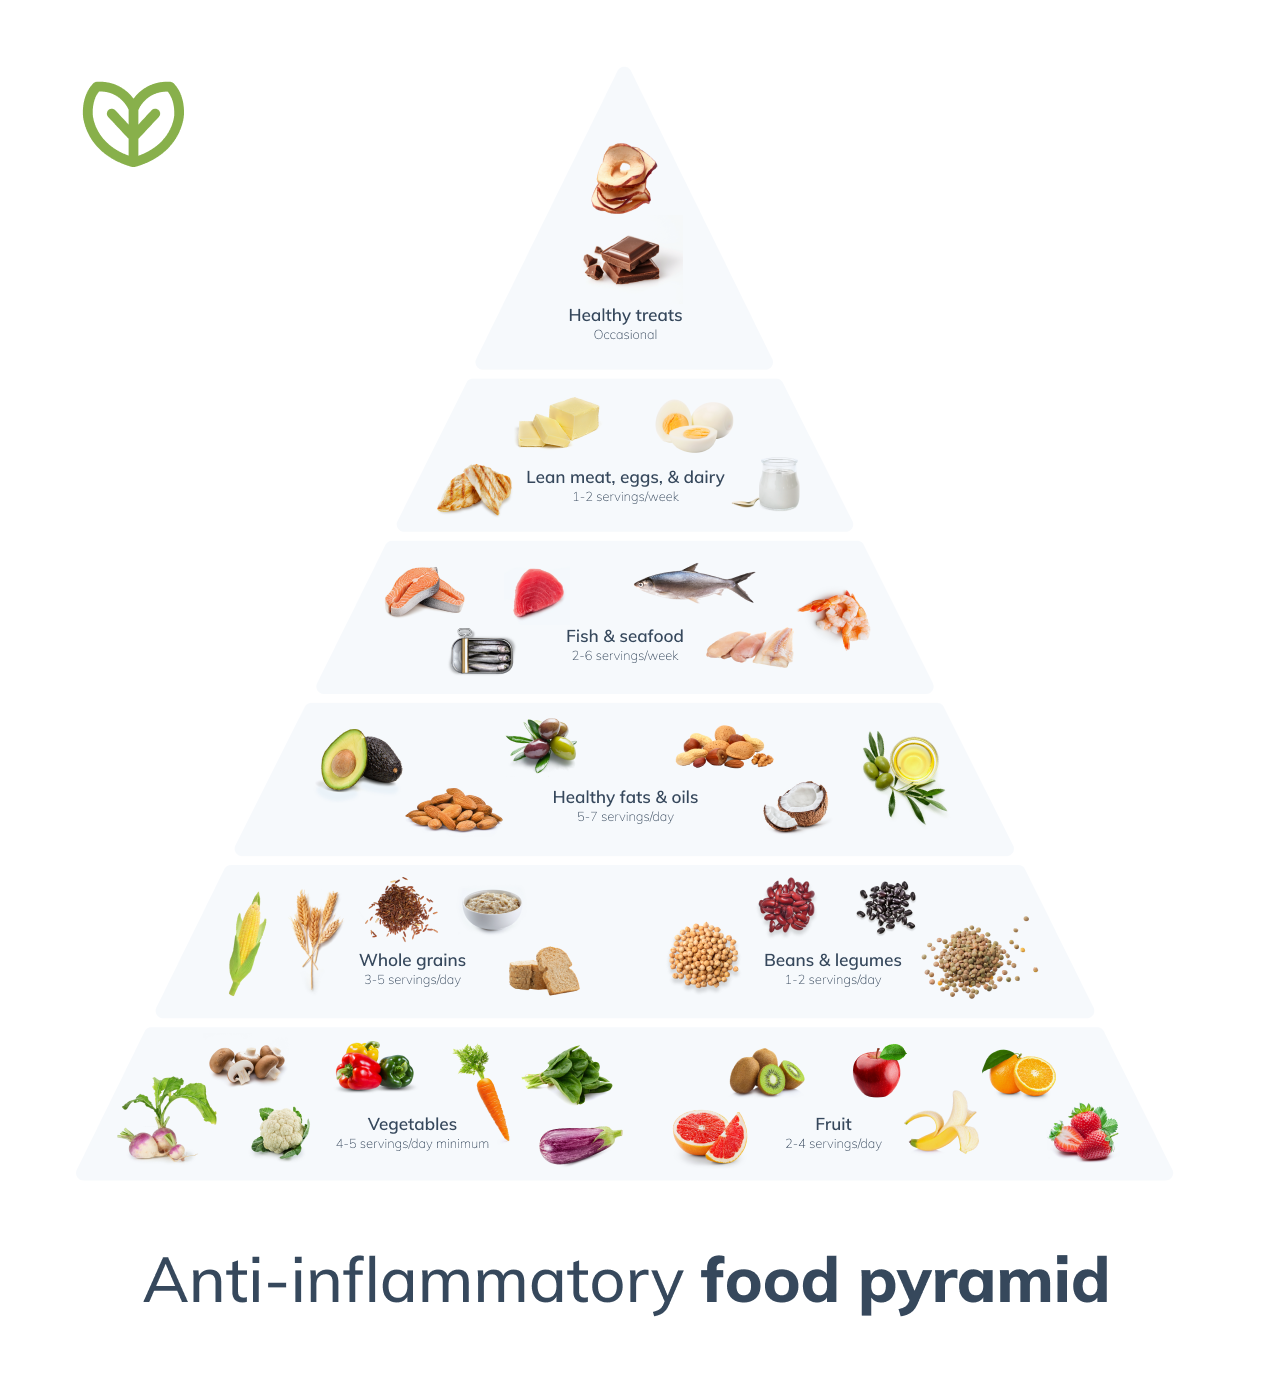 IBD anti inflammatory food pyramid infographic